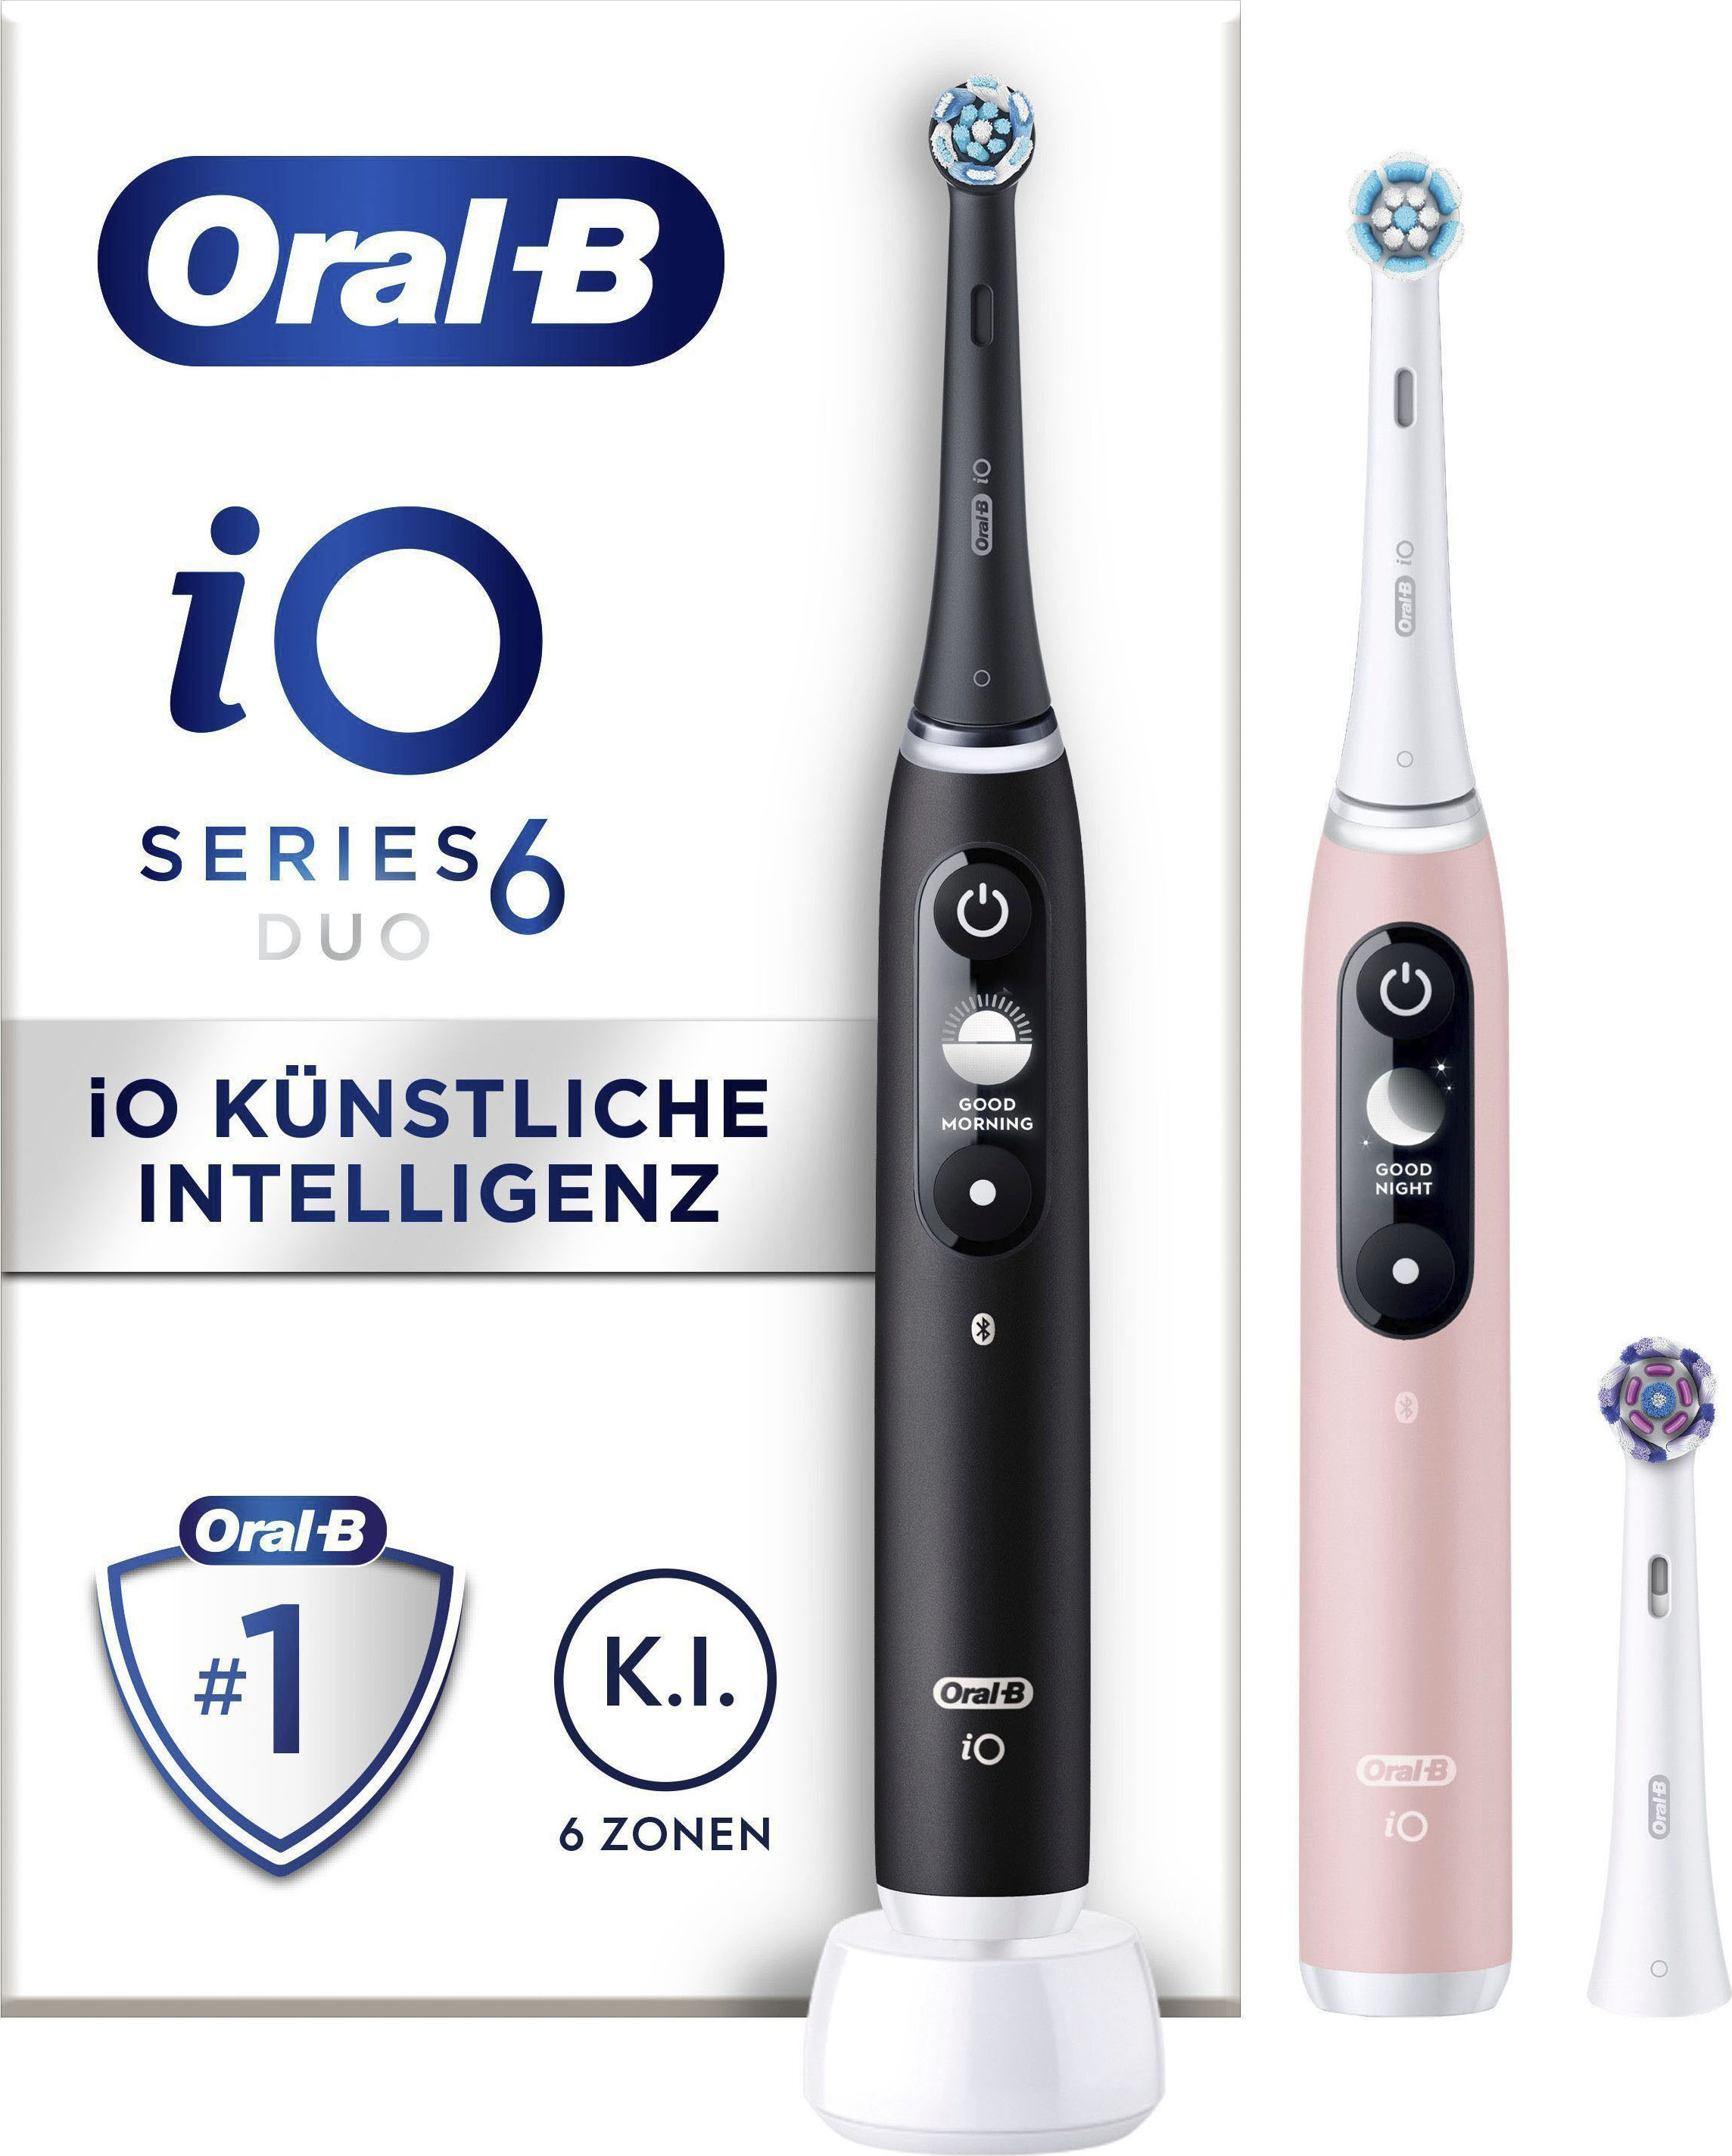 Oral-B iO Series 6 Duo Elektrische Zahnbürste Schwarz / Rosa